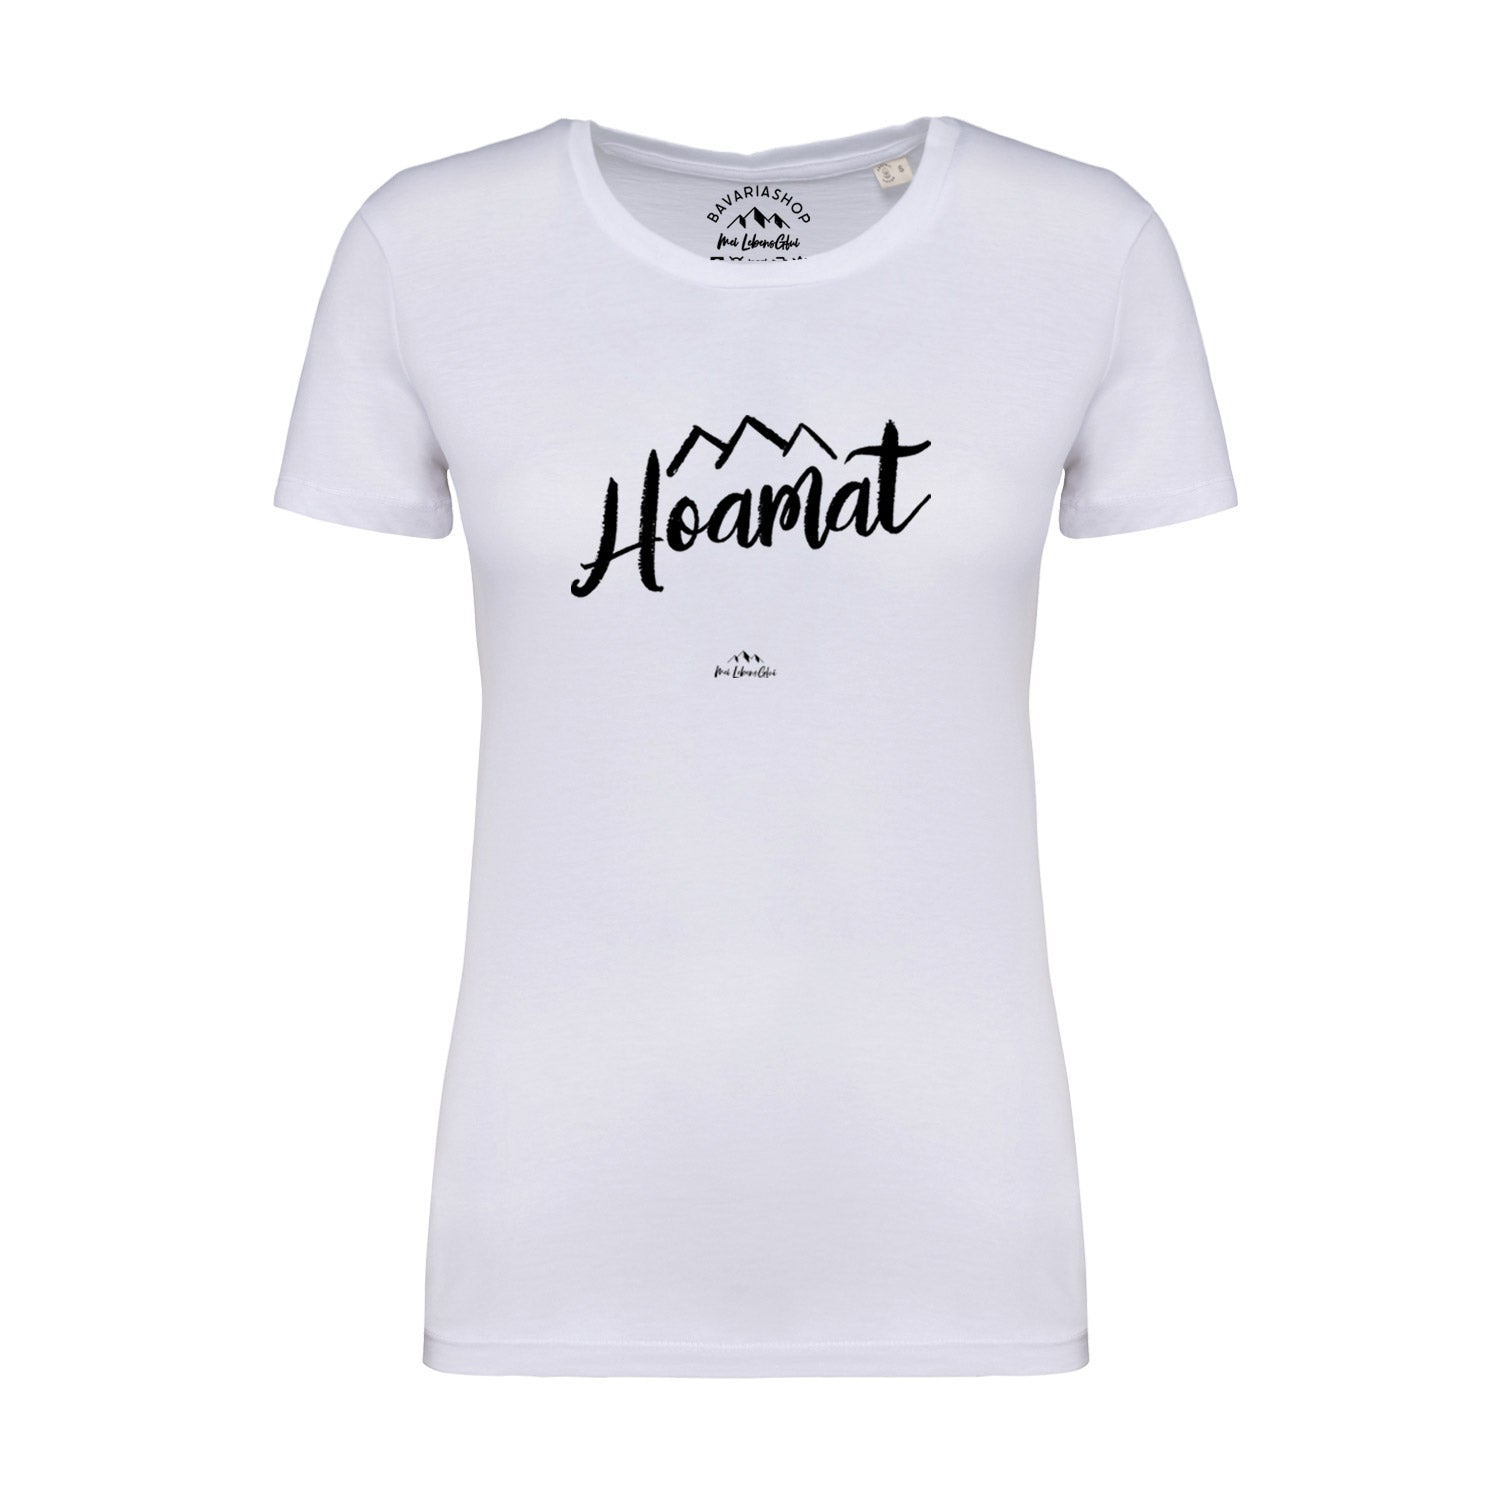 Damen T-Shirt "Hoamat"